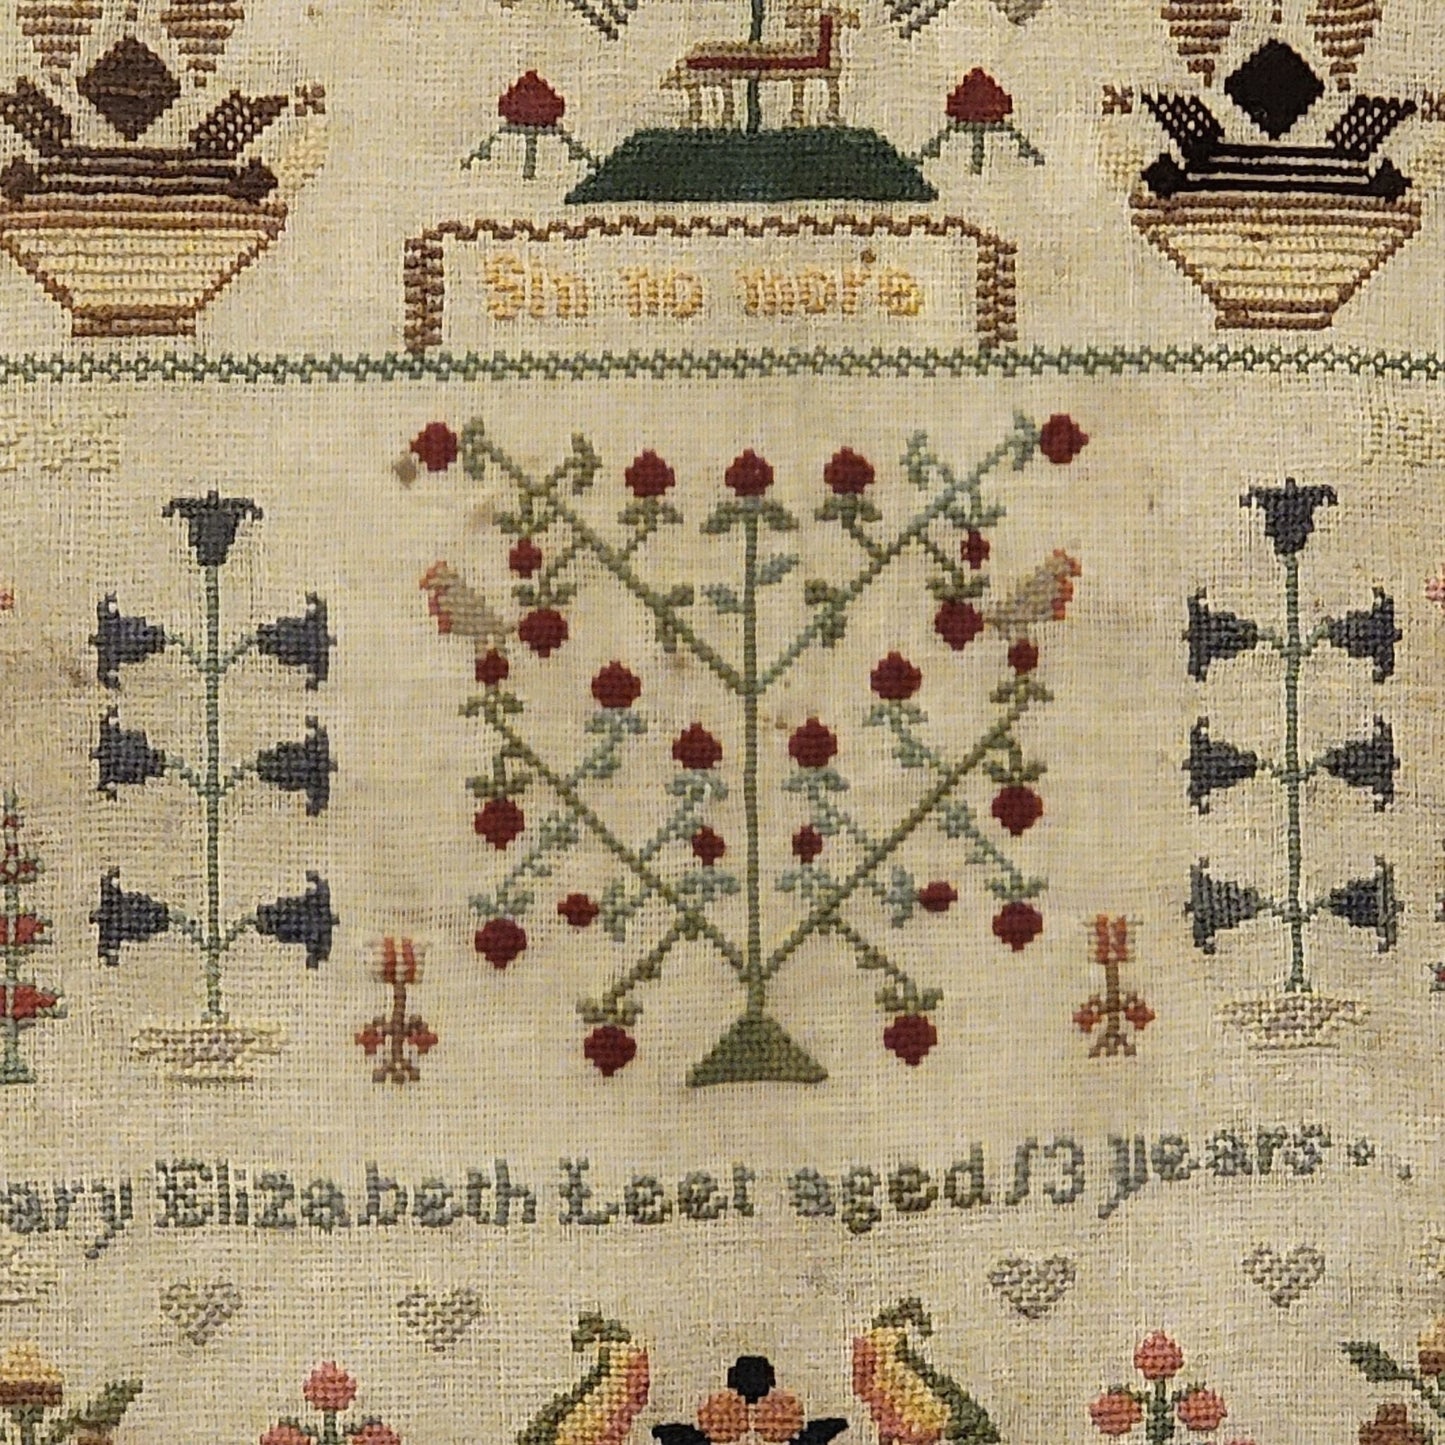 Mary Elizabeth Leet Sampler Pattern 1865 Printed Version